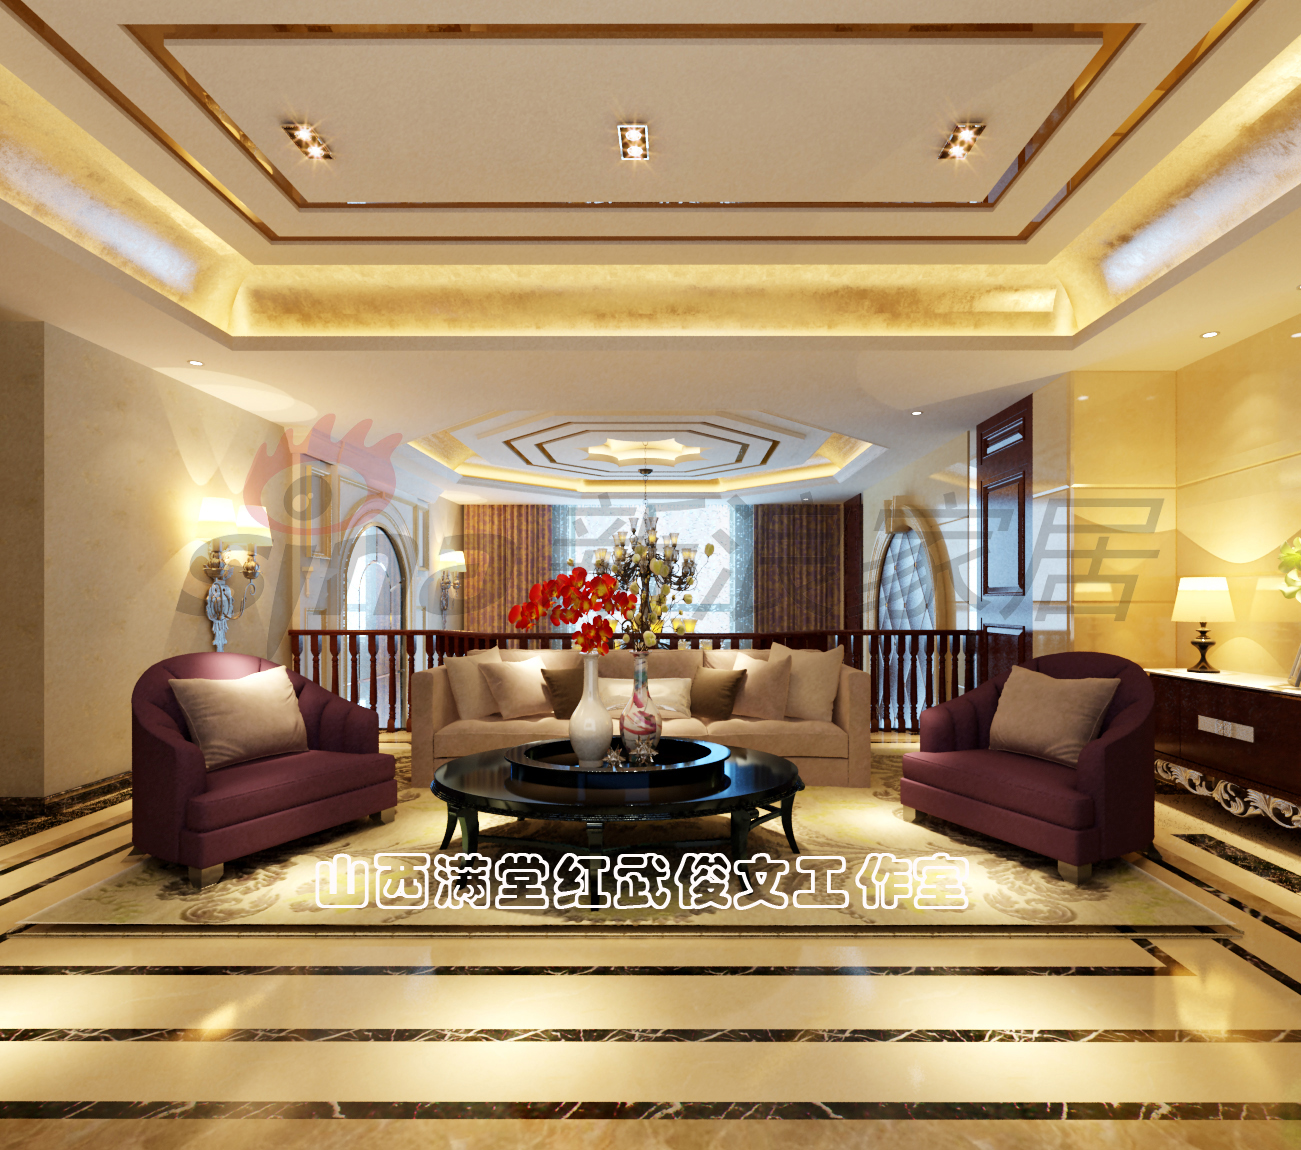 简约 欧式 客厅图片来自满堂红设计师武俊文在长治别墅的分享